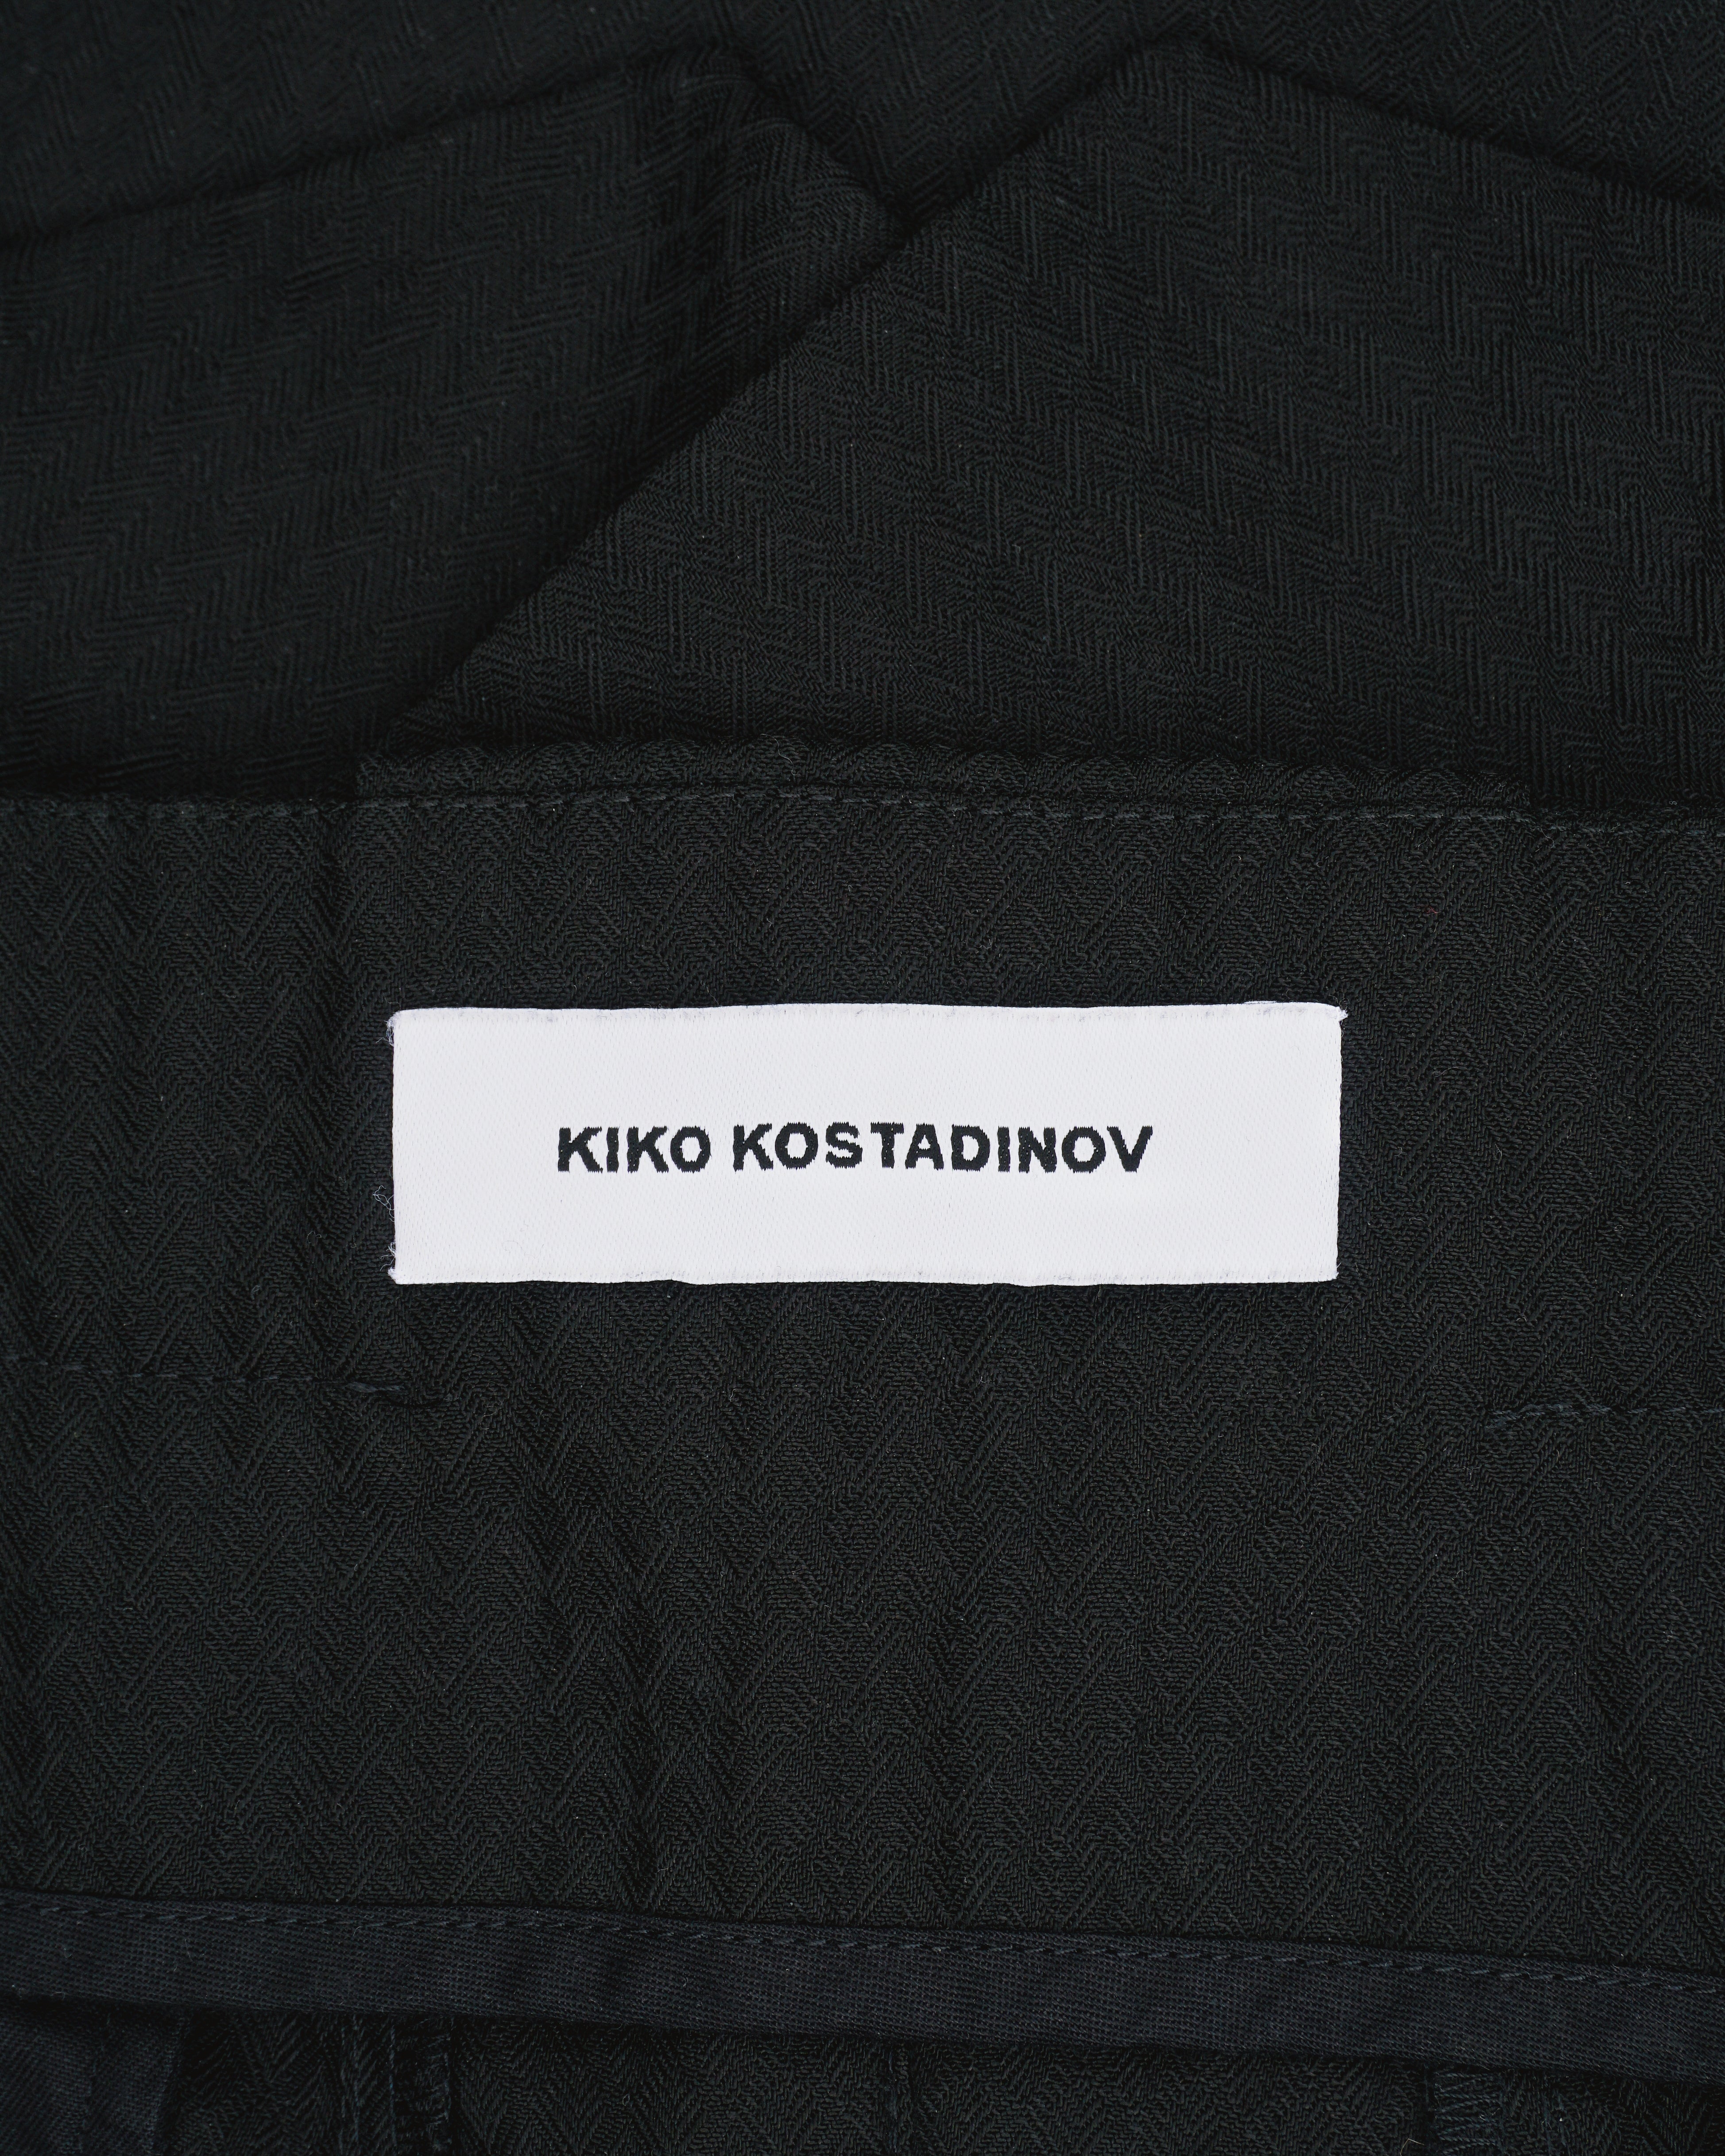 Kiko Kostadinov AW20 0009 Klees Embroidery Trousers – opening act.